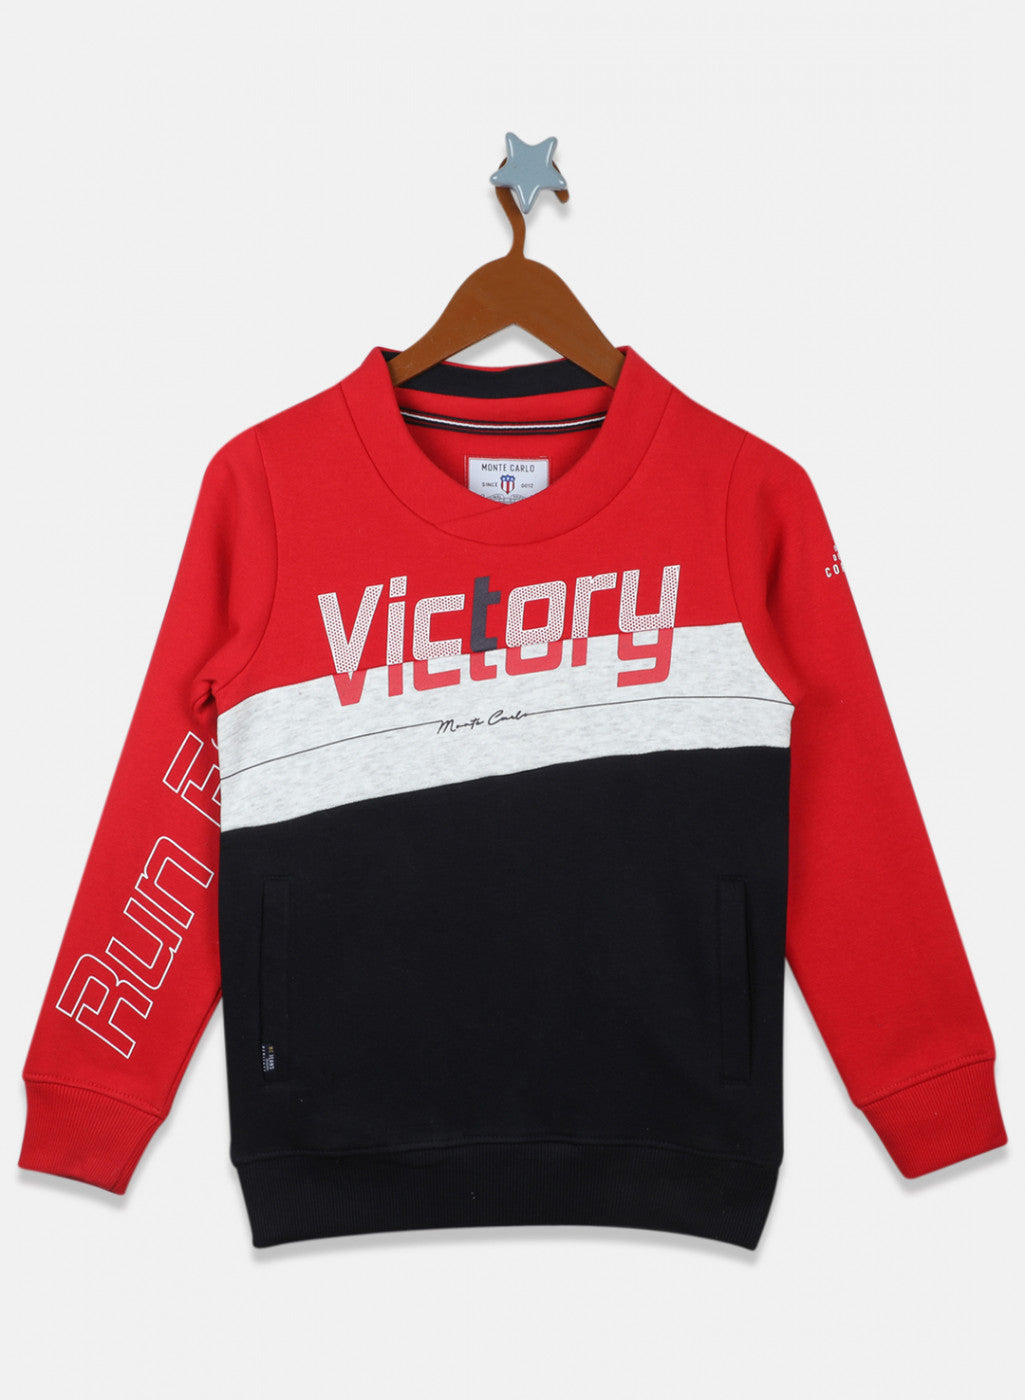 Boys Red & Navy Printed Sweatshirt